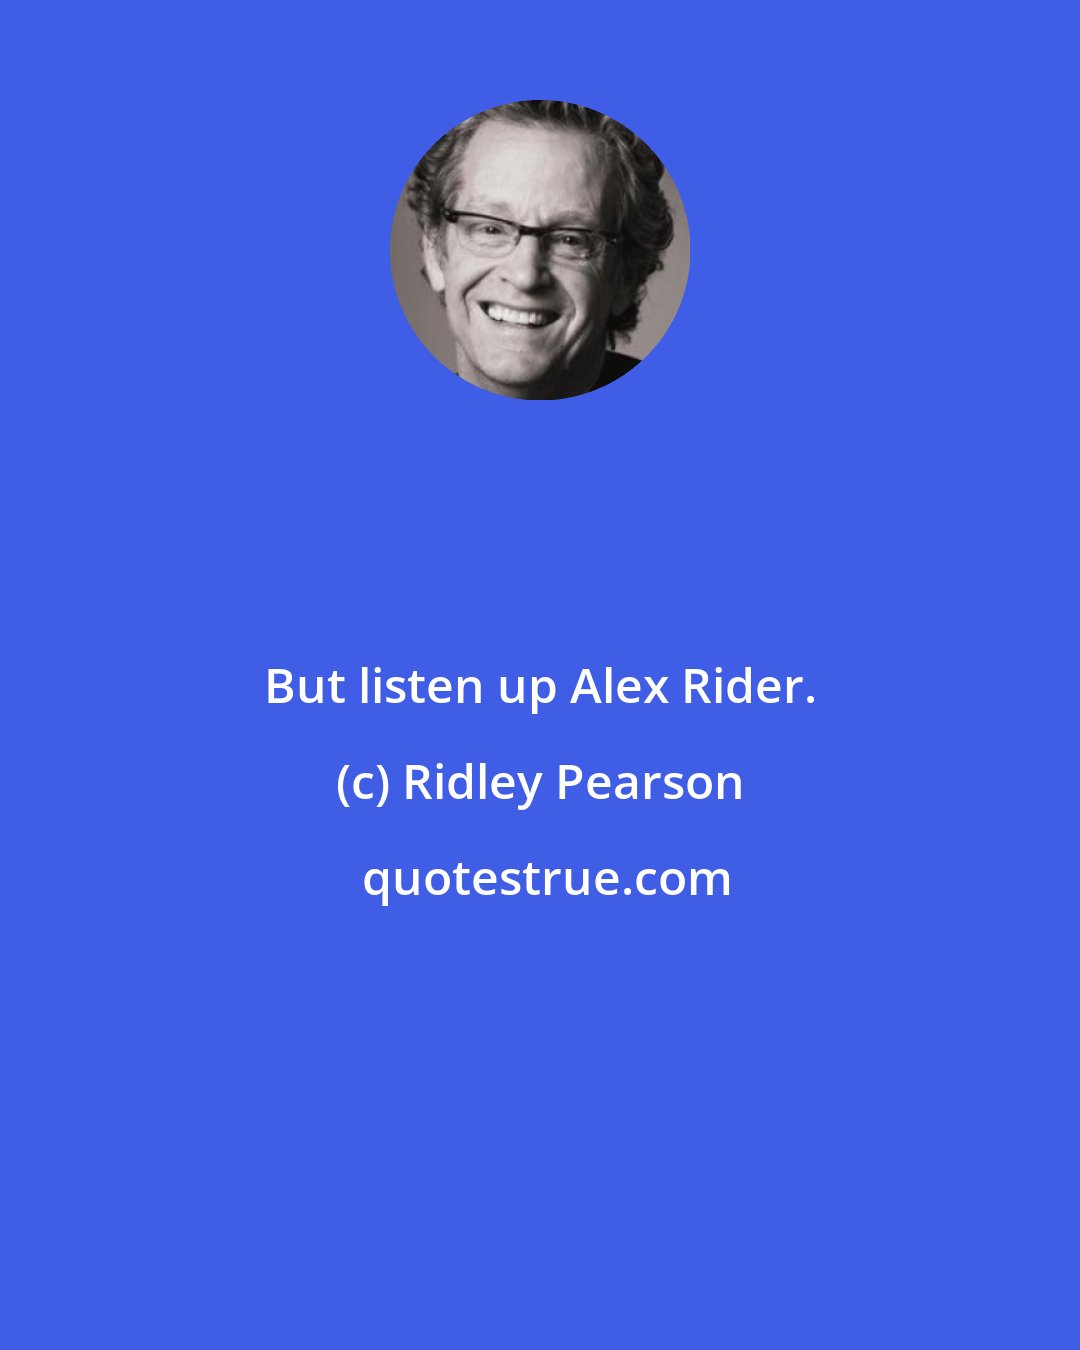 Ridley Pearson: But listen up Alex Rider.